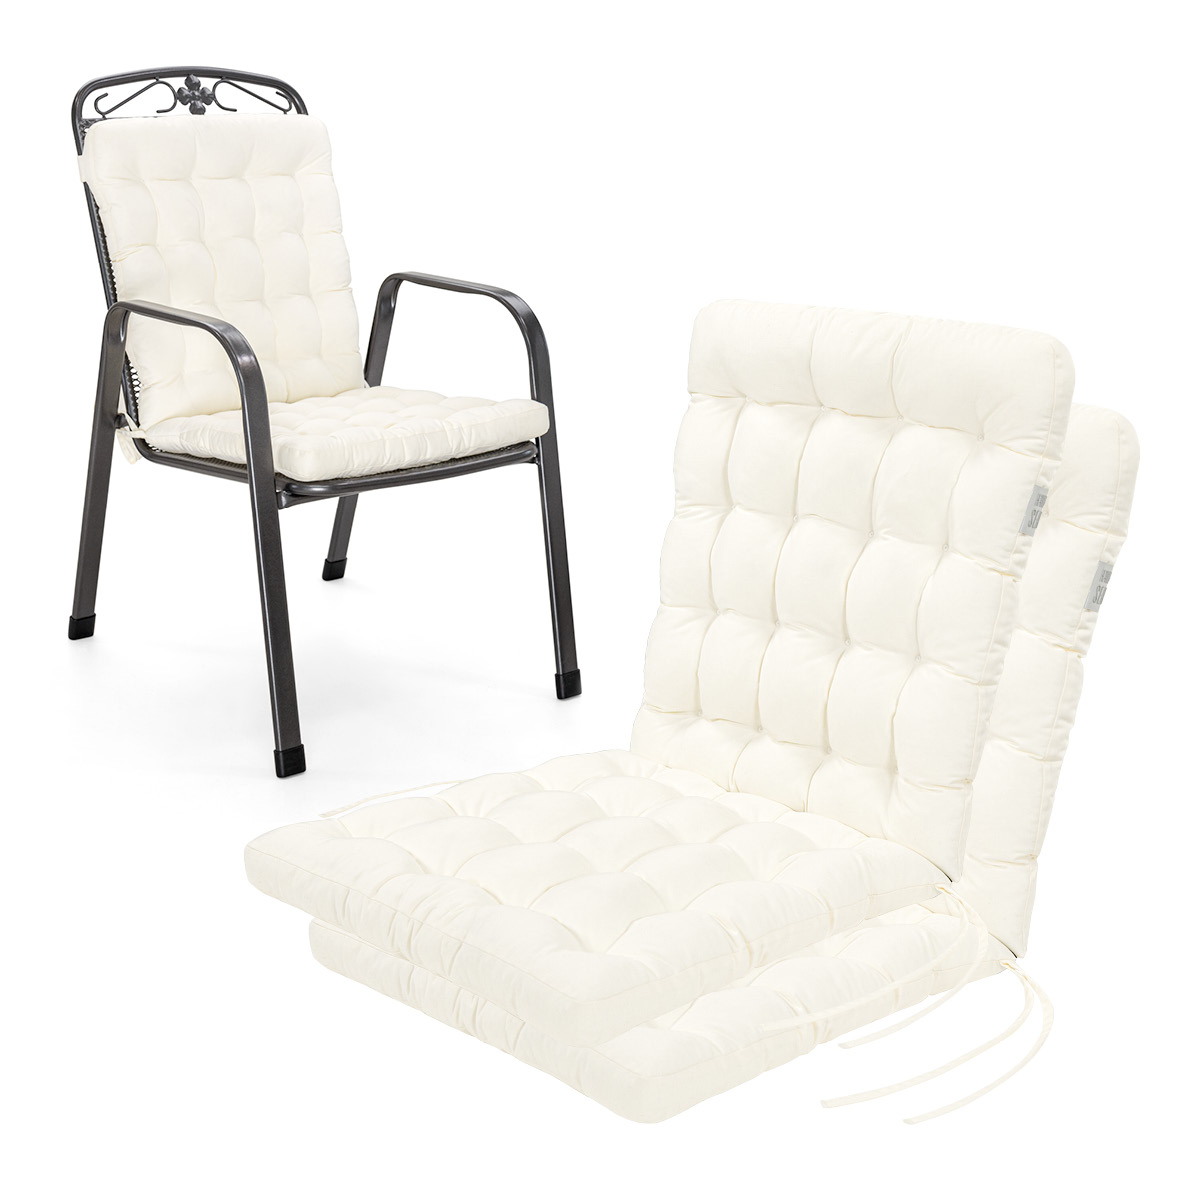 Niedriglehner Auflagen Weiß | 1 St. | bequemes Sitzpolster, orthopädisch gepolsterte Stapelstuhl-Sitzauflagen | HAVE A SEAT Living